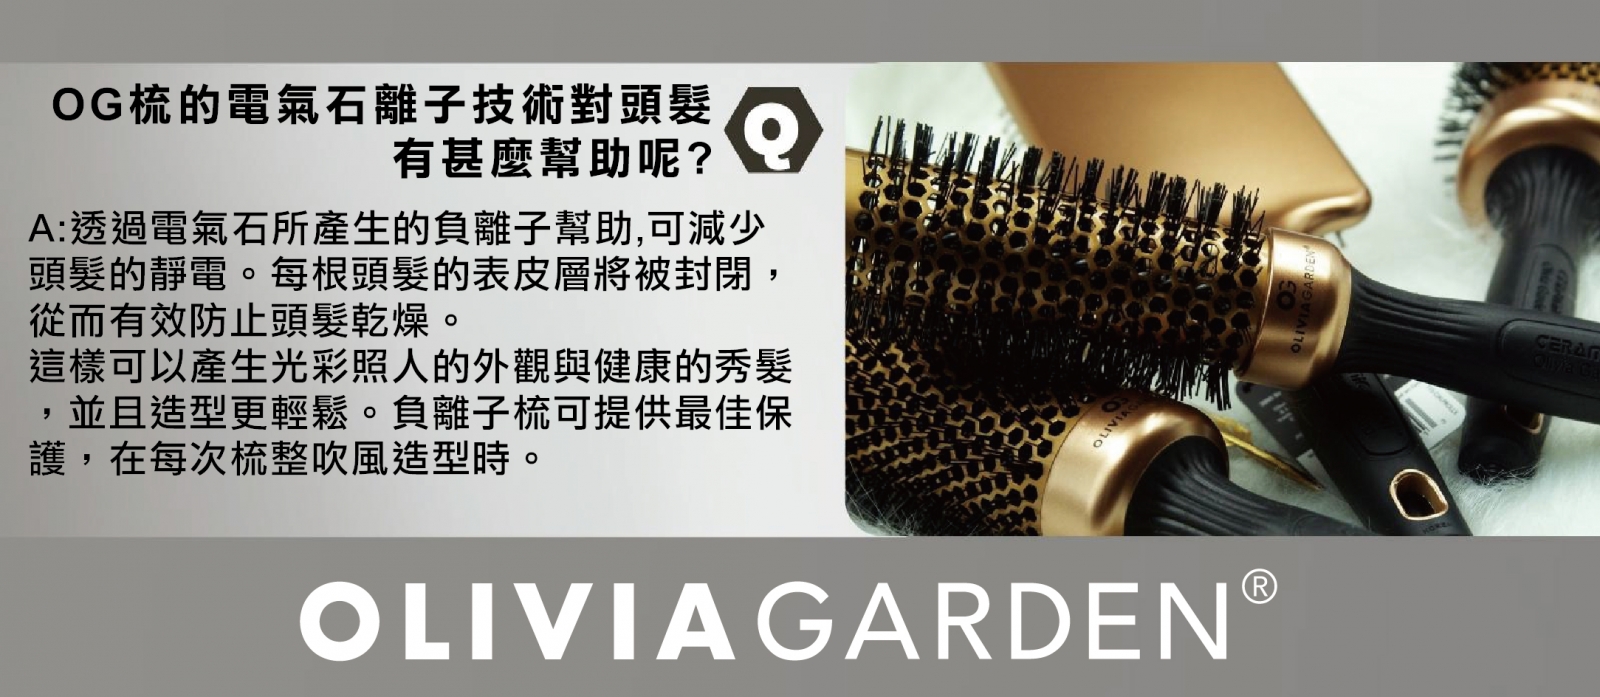 Q:OG梳的電氣石離子技術對頭髮有甚麼幫助呢?